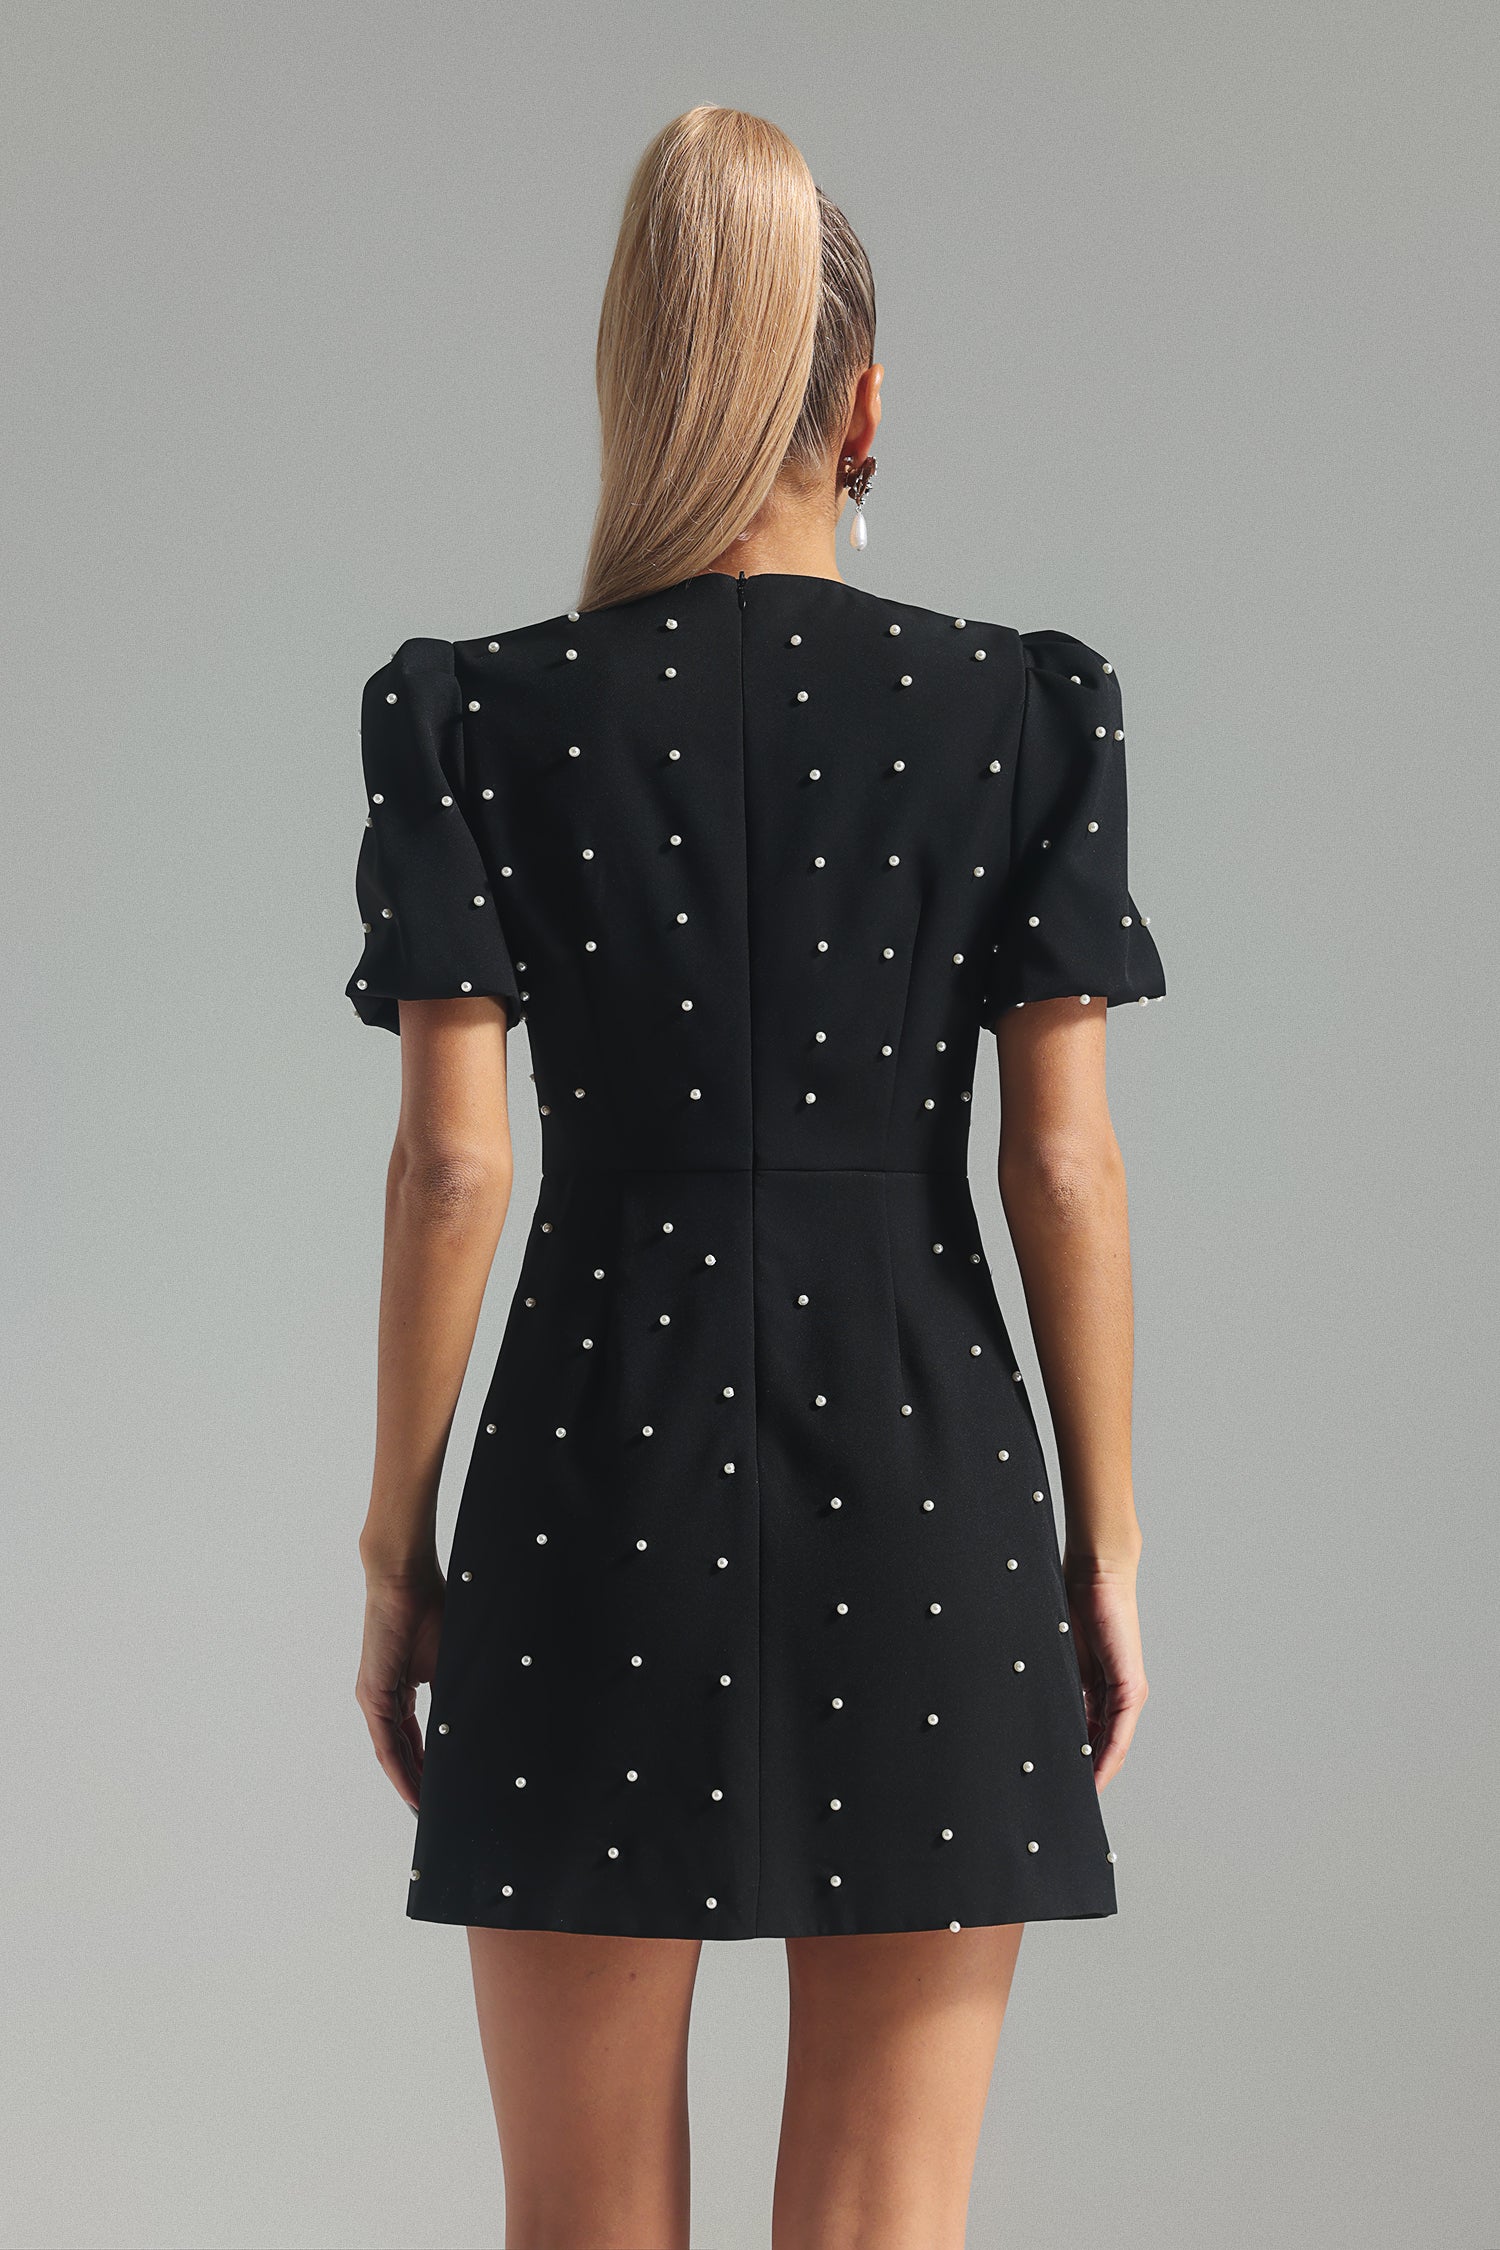 Karolina Pearl Bow knot Mini Dress